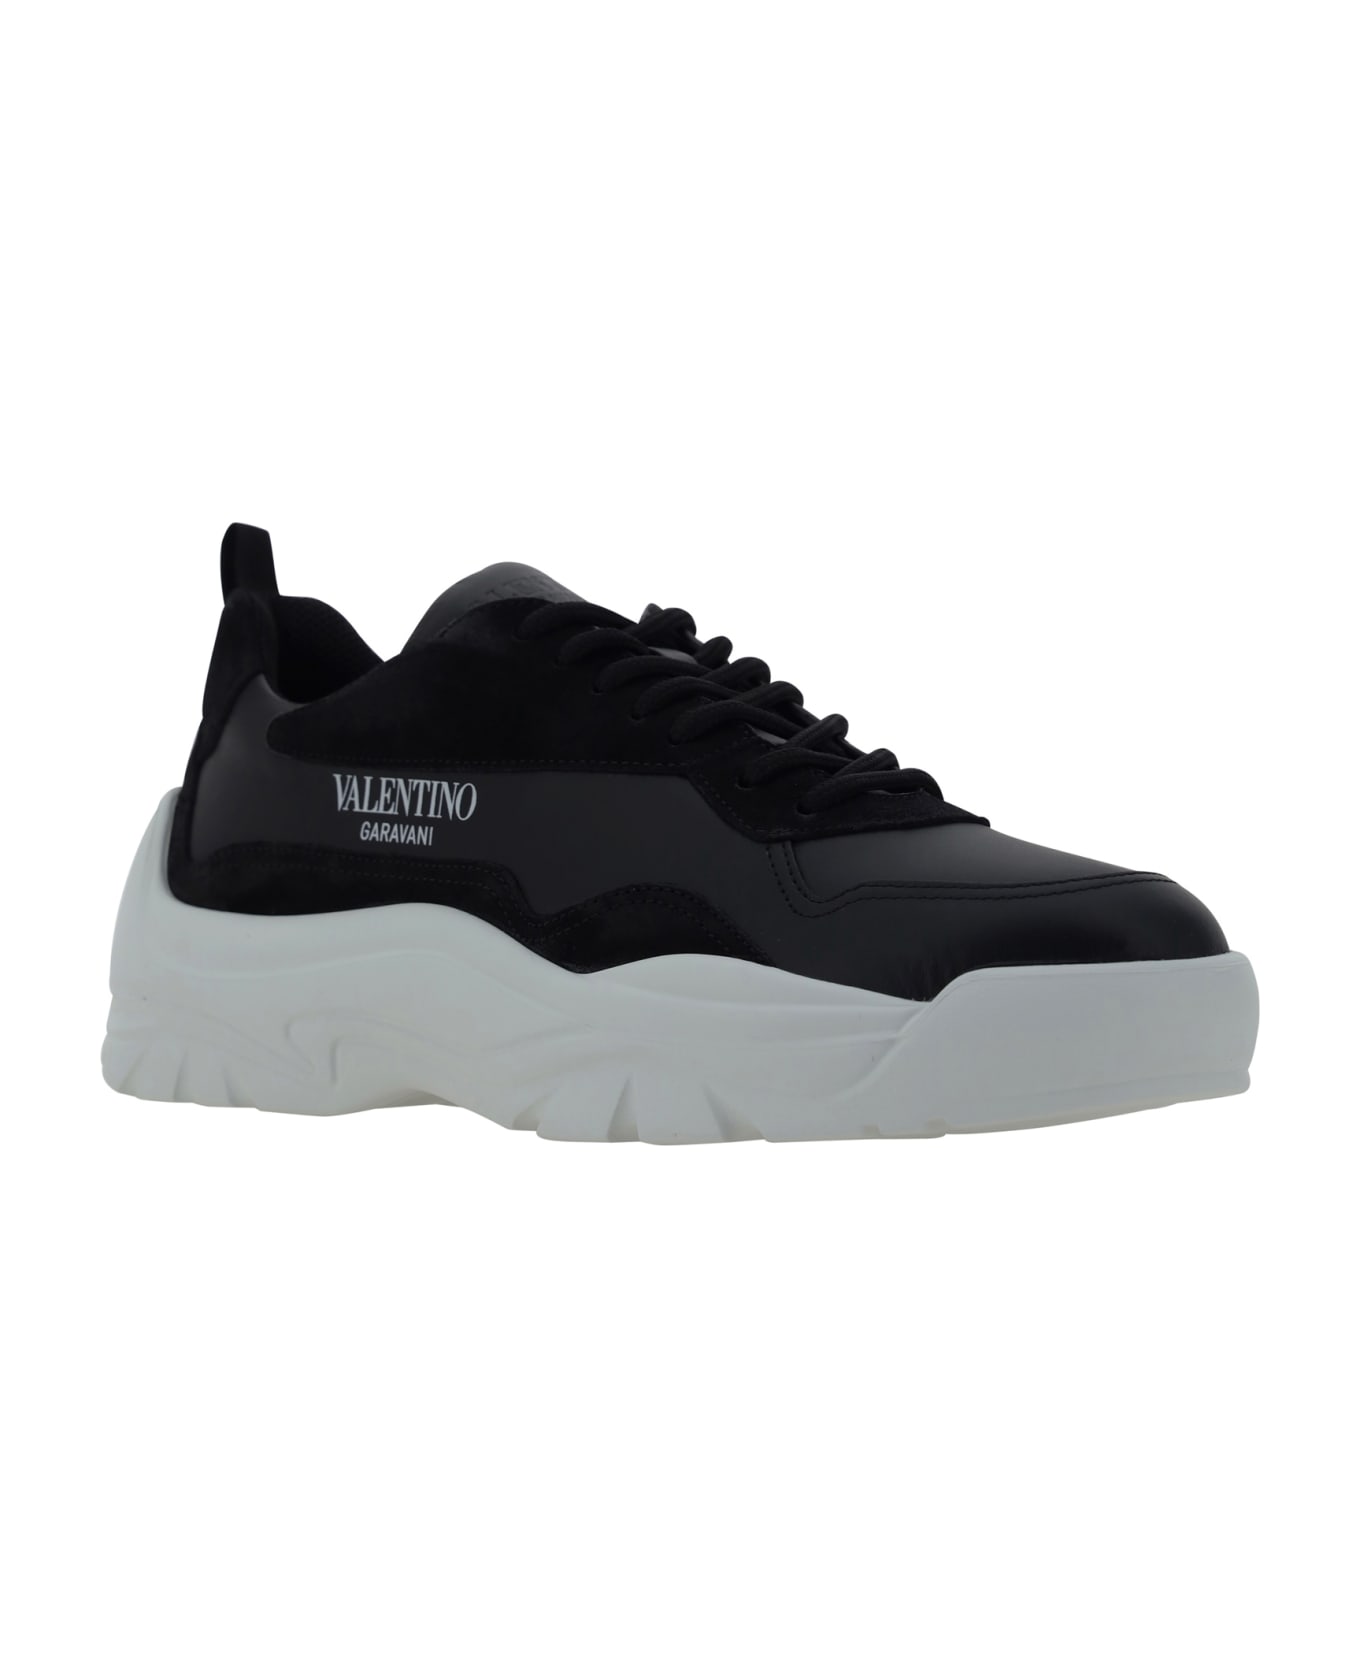 Valentino Garavani Gumboy Sneakers - Nero/nero/bianco-nero-bianco スニーカー